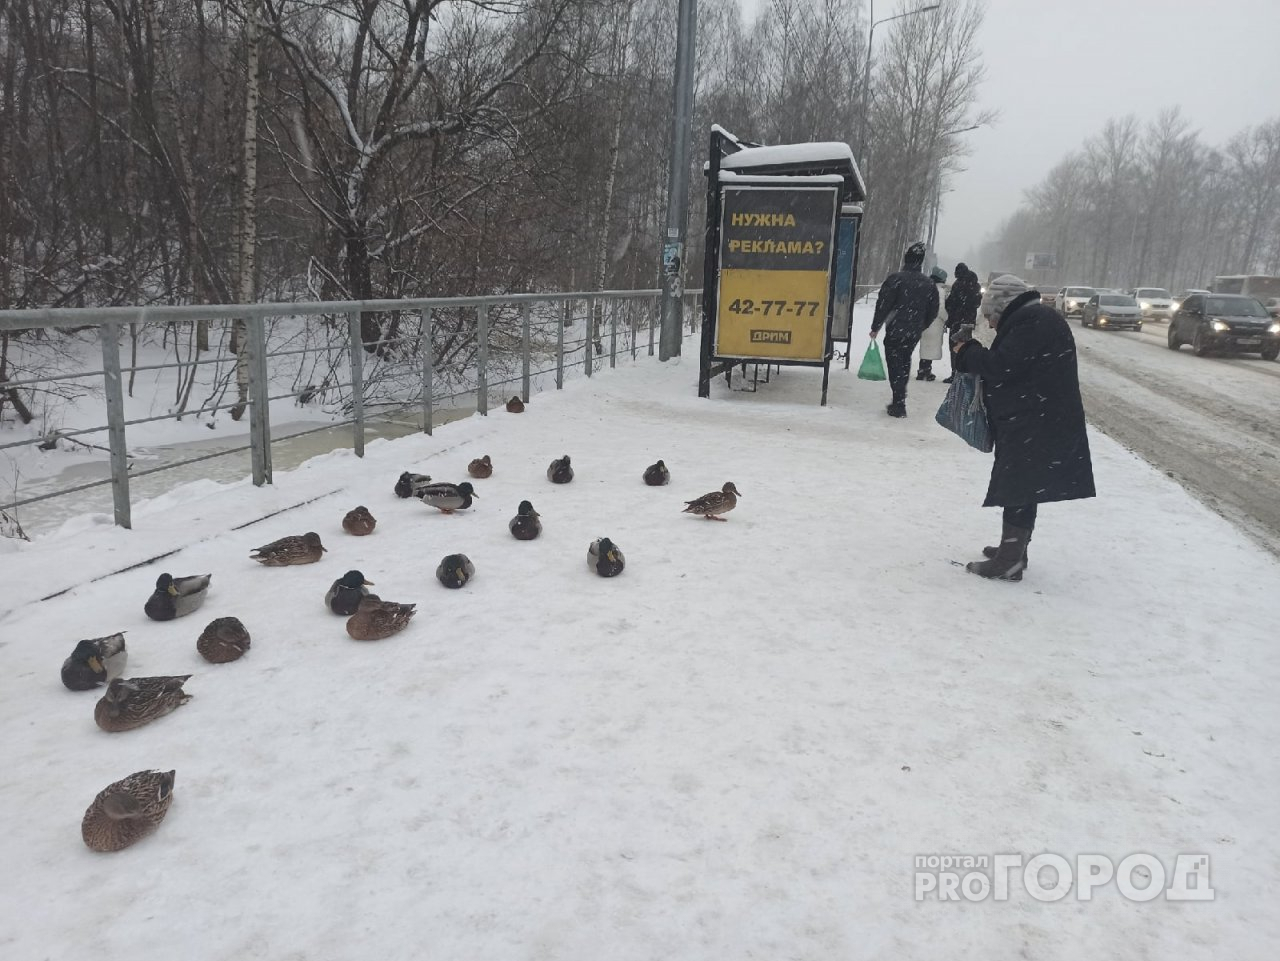 Примерзают к льду: в тридцатиградусные морозы утки поселились на остановке Ярославля